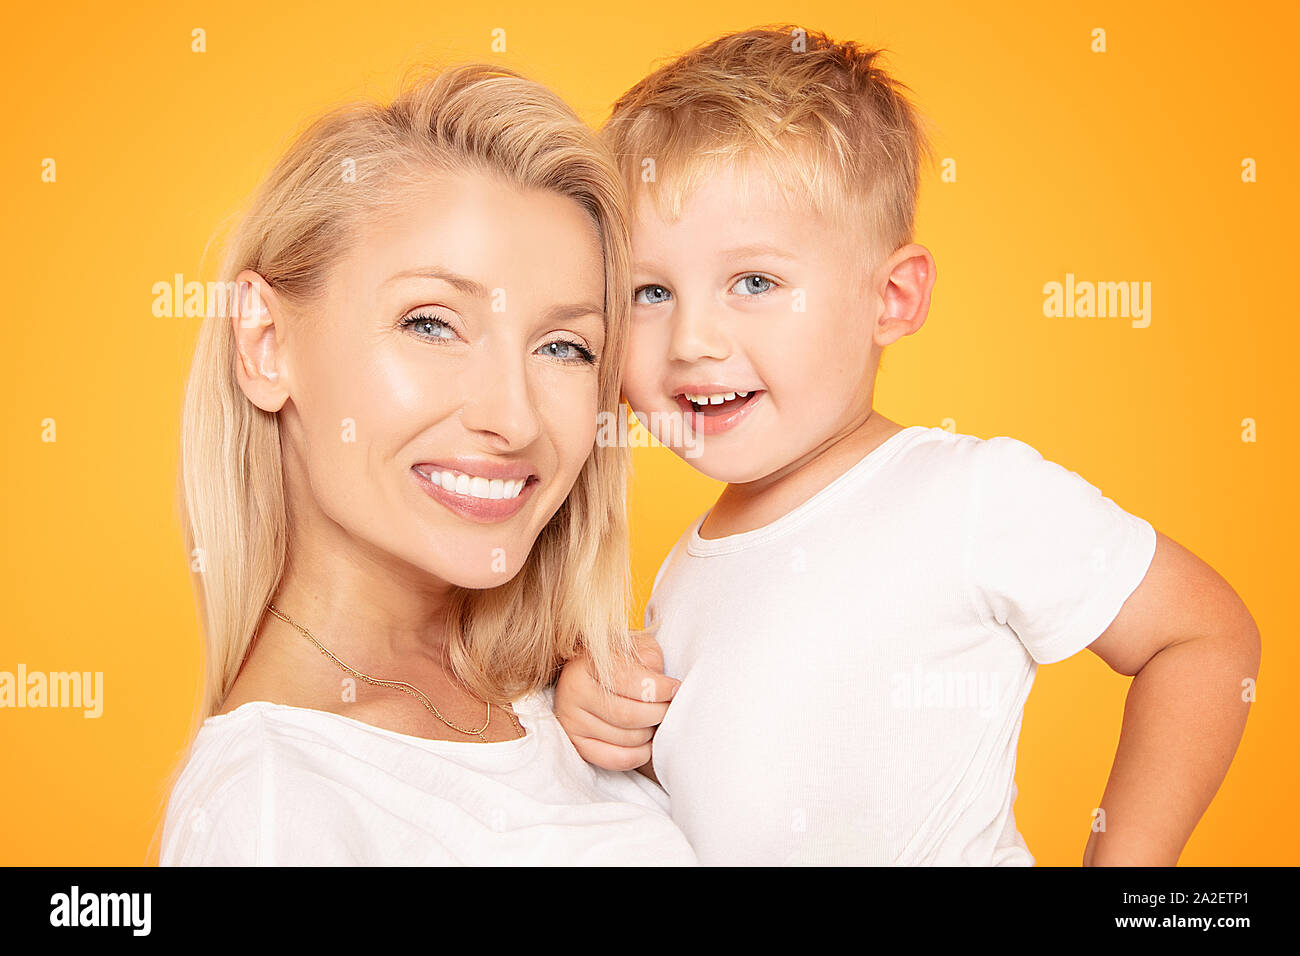 Mutter, Kind Sohn an jedem anderen auf der Suche nach gelb orange Wand Hintergrund isoliert. Fröhliche Frau. Viel Spaß mit Kind Junge. Muttertag, liebe Familie Stockfoto